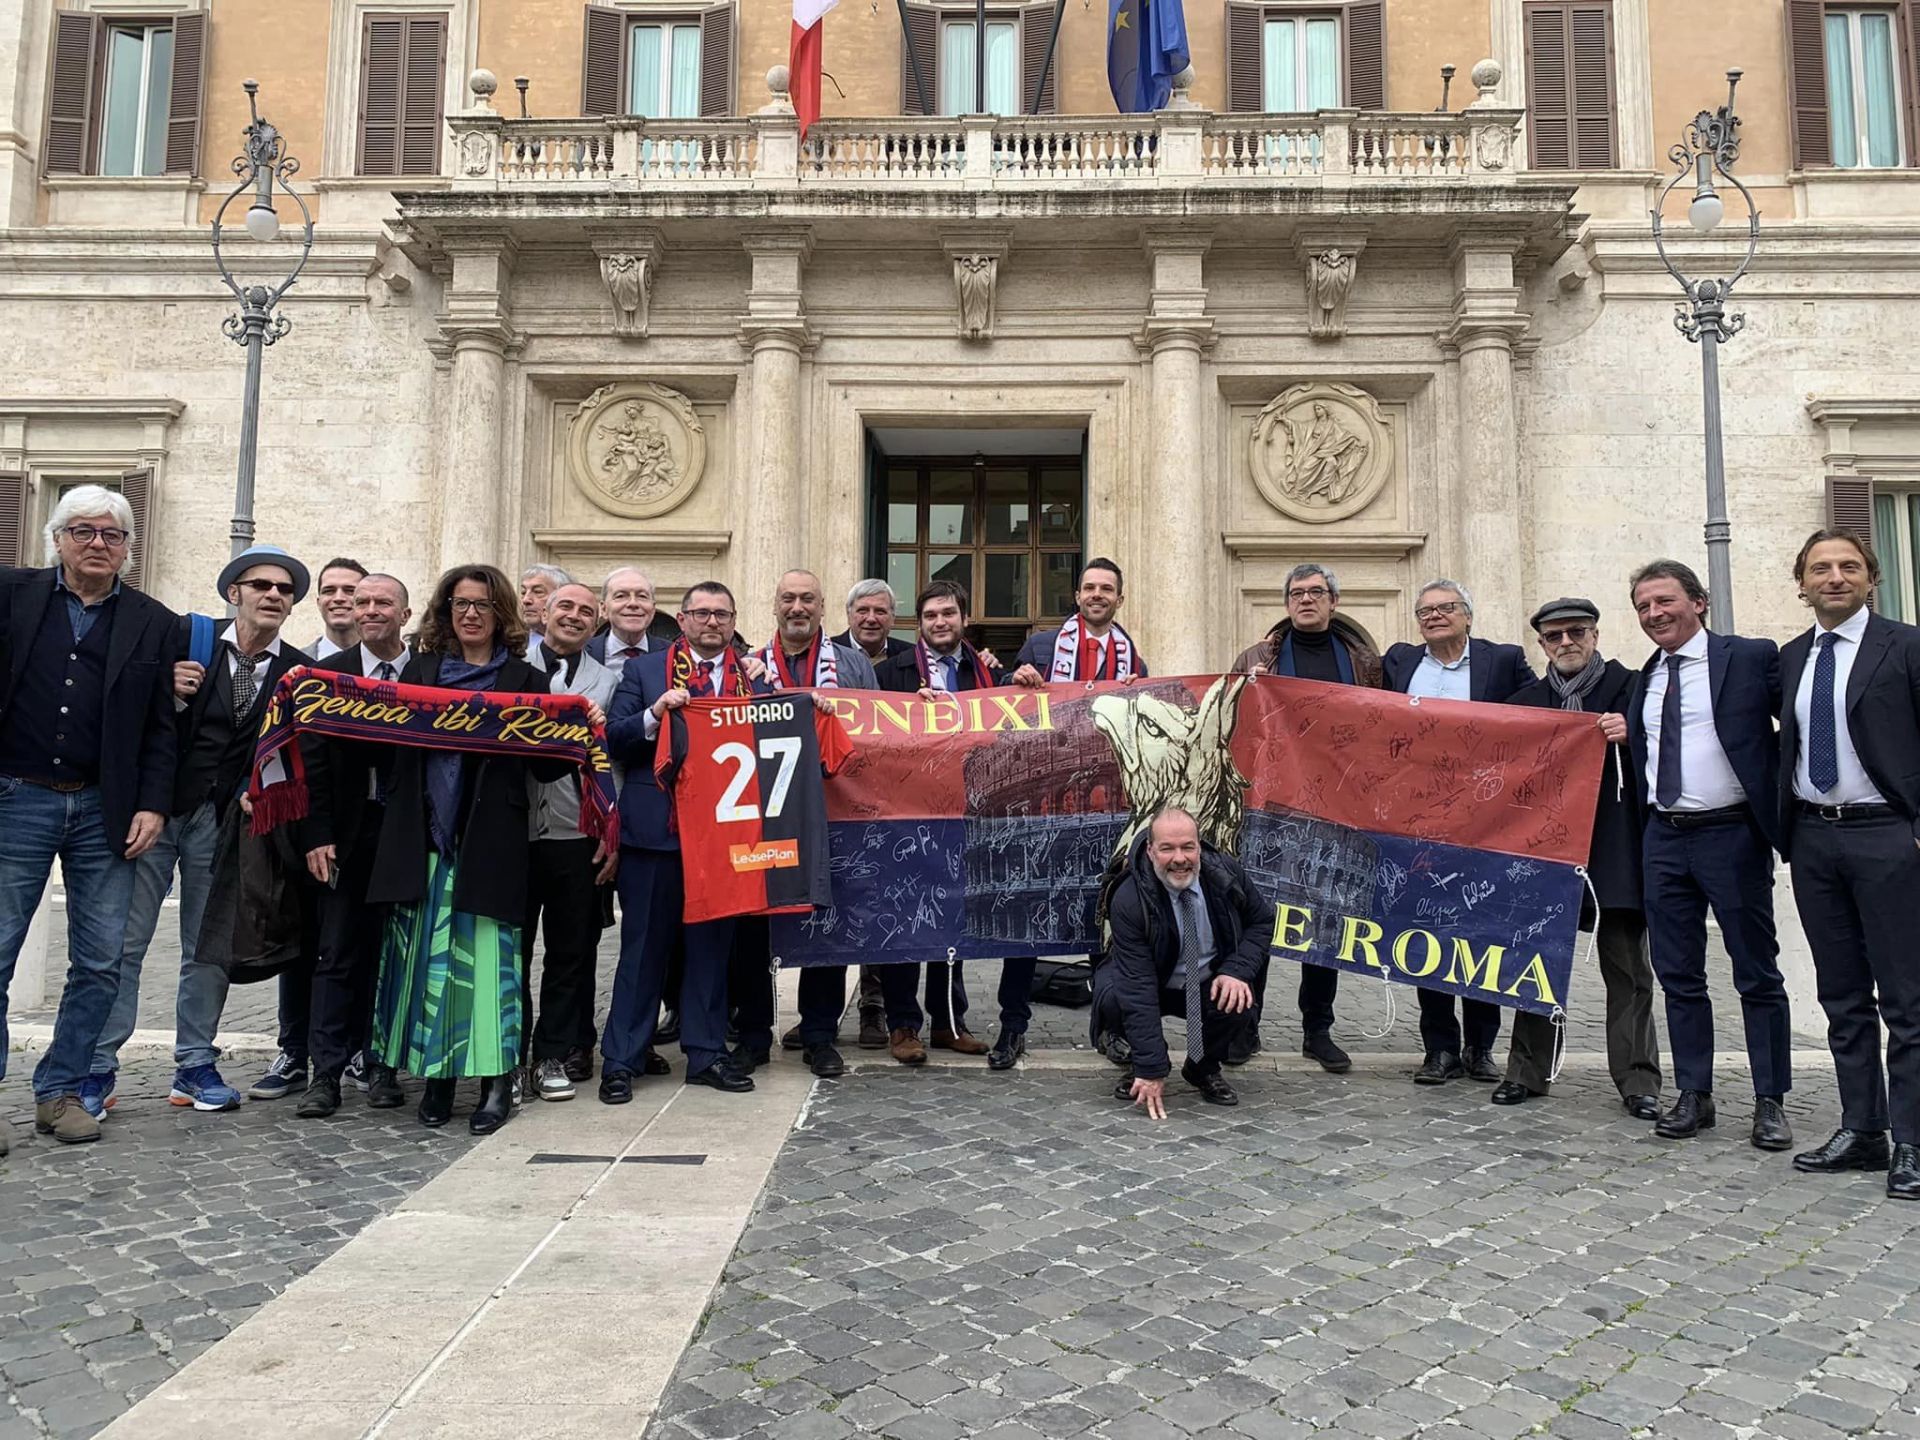 Genoa, il club "Zeneixi di Roma" sbarca a Montecitorio: tra gli iscritti sei parlamentari e il ministro Zangrillo